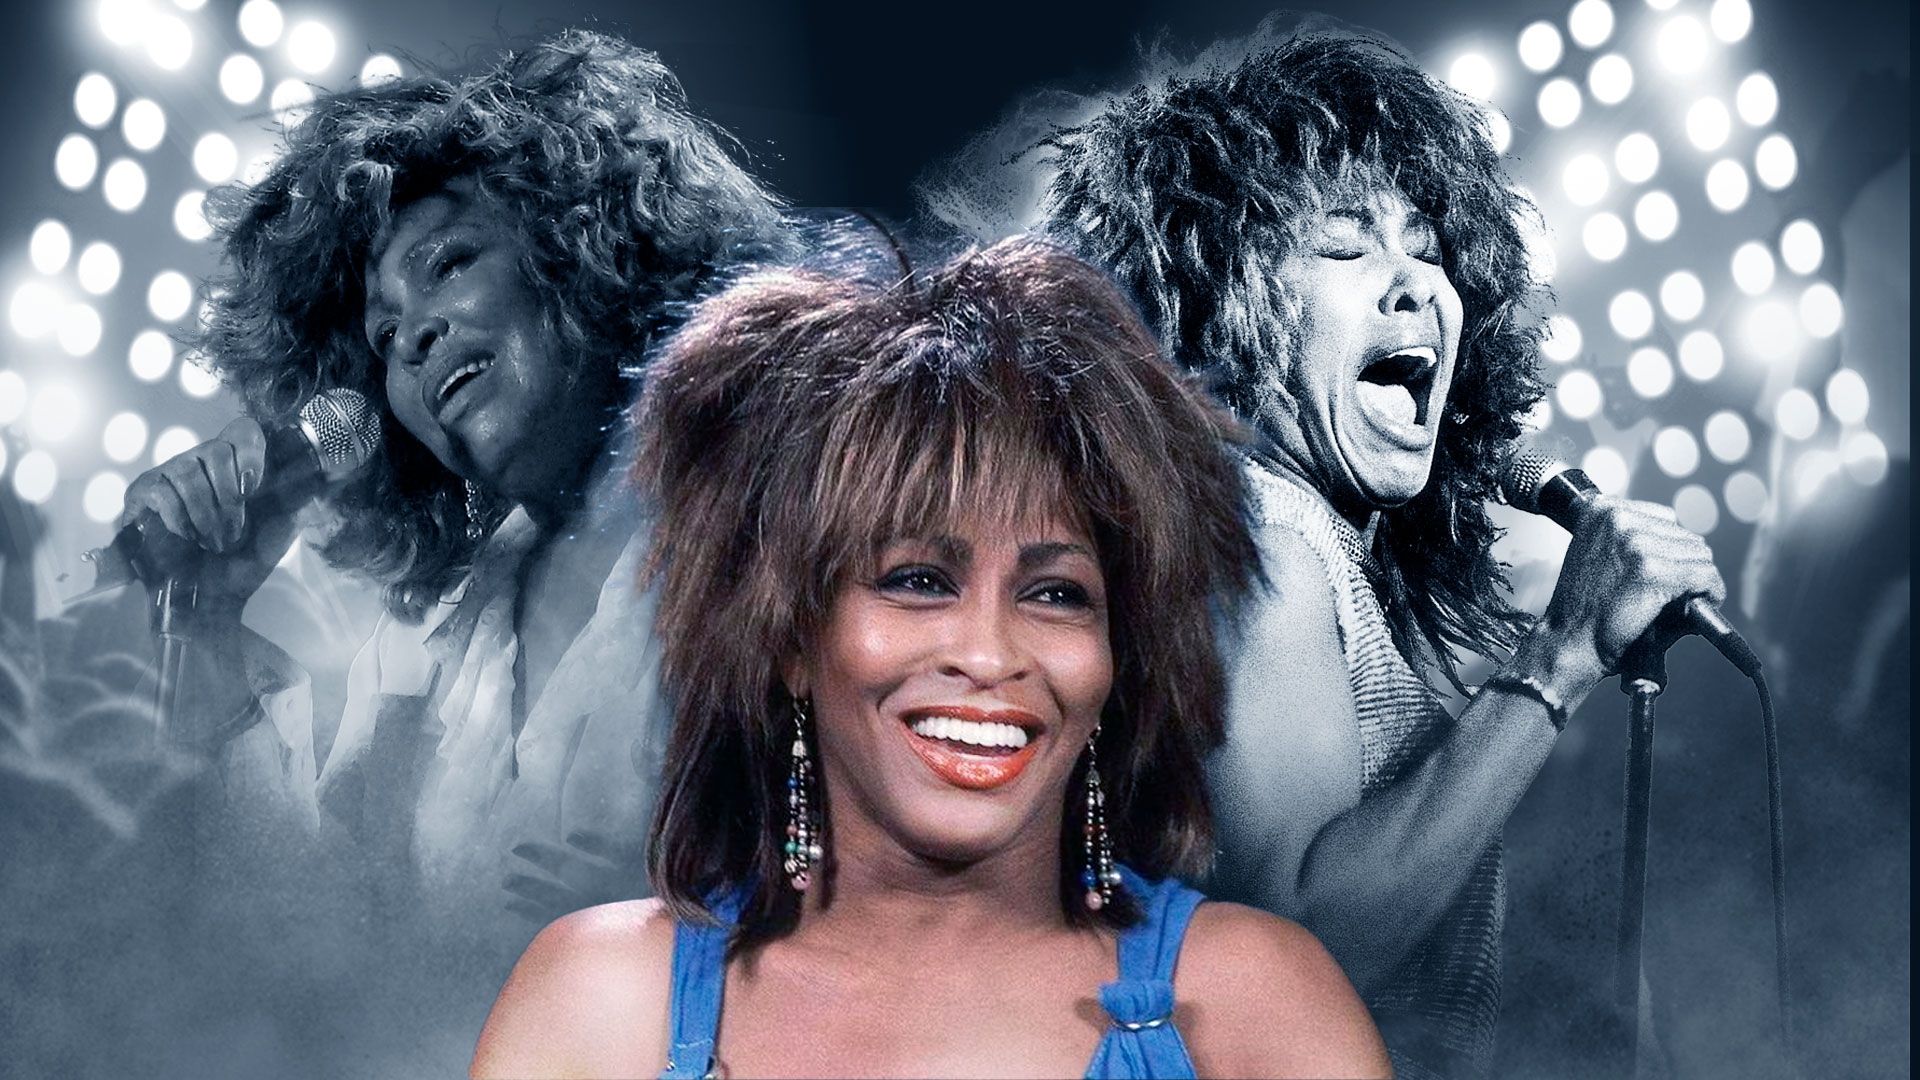 Tina Turner tendrá un funeral privado, según expresaron sus familiares en un comunicado. Original Infobae